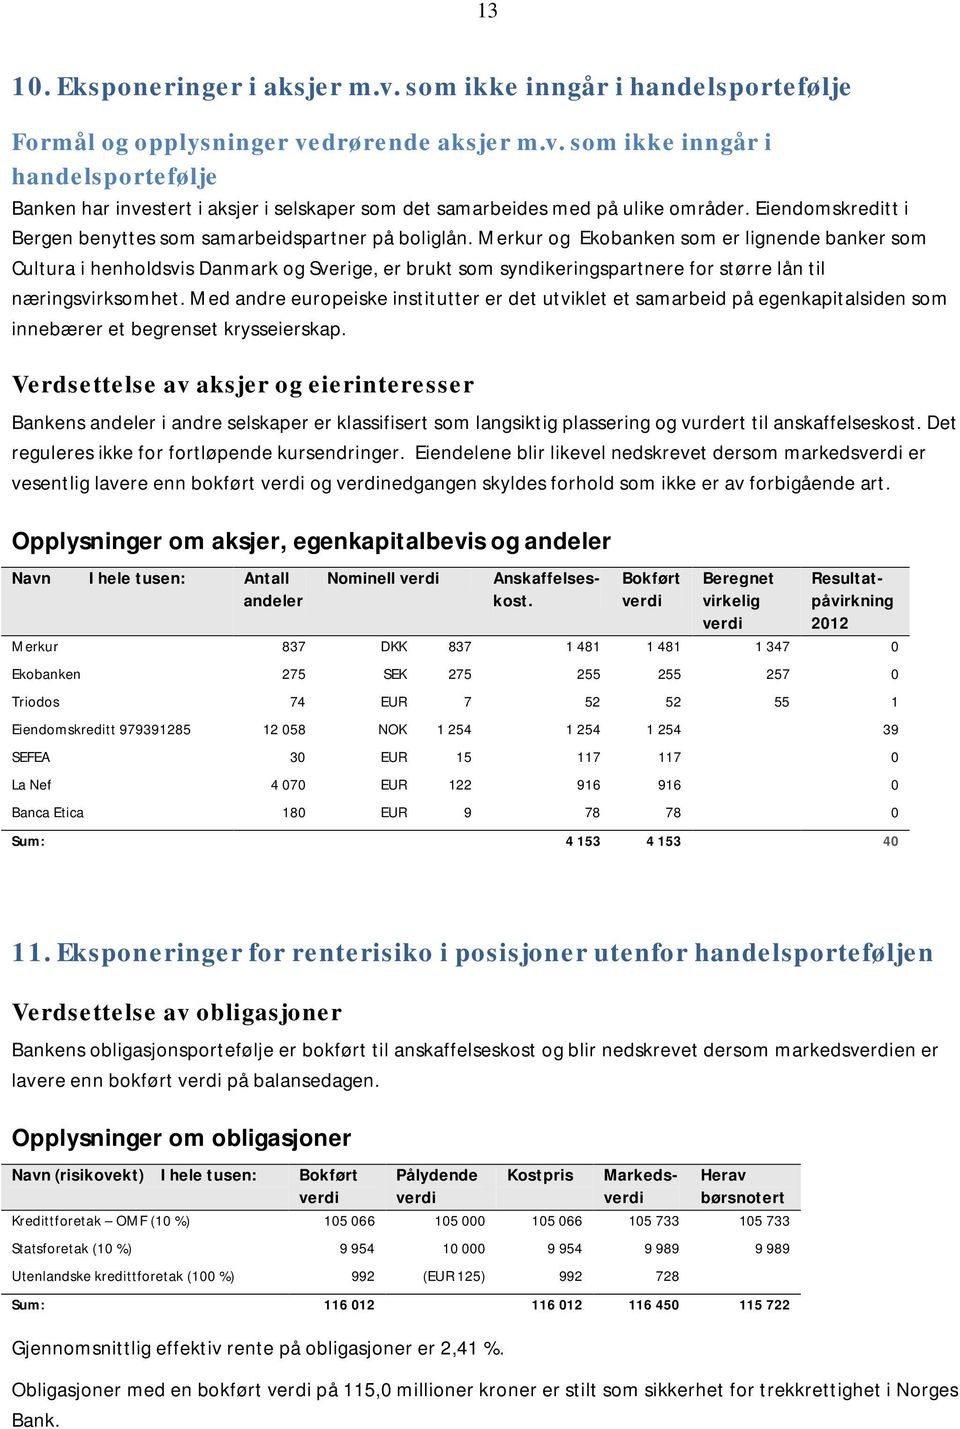 Merkur og Ekobanken som er lignende banker som Cultura i henholdsvis Danmark og Sverige, er brukt som syndikeringspartnere for større lån til næringsvirksomhet.